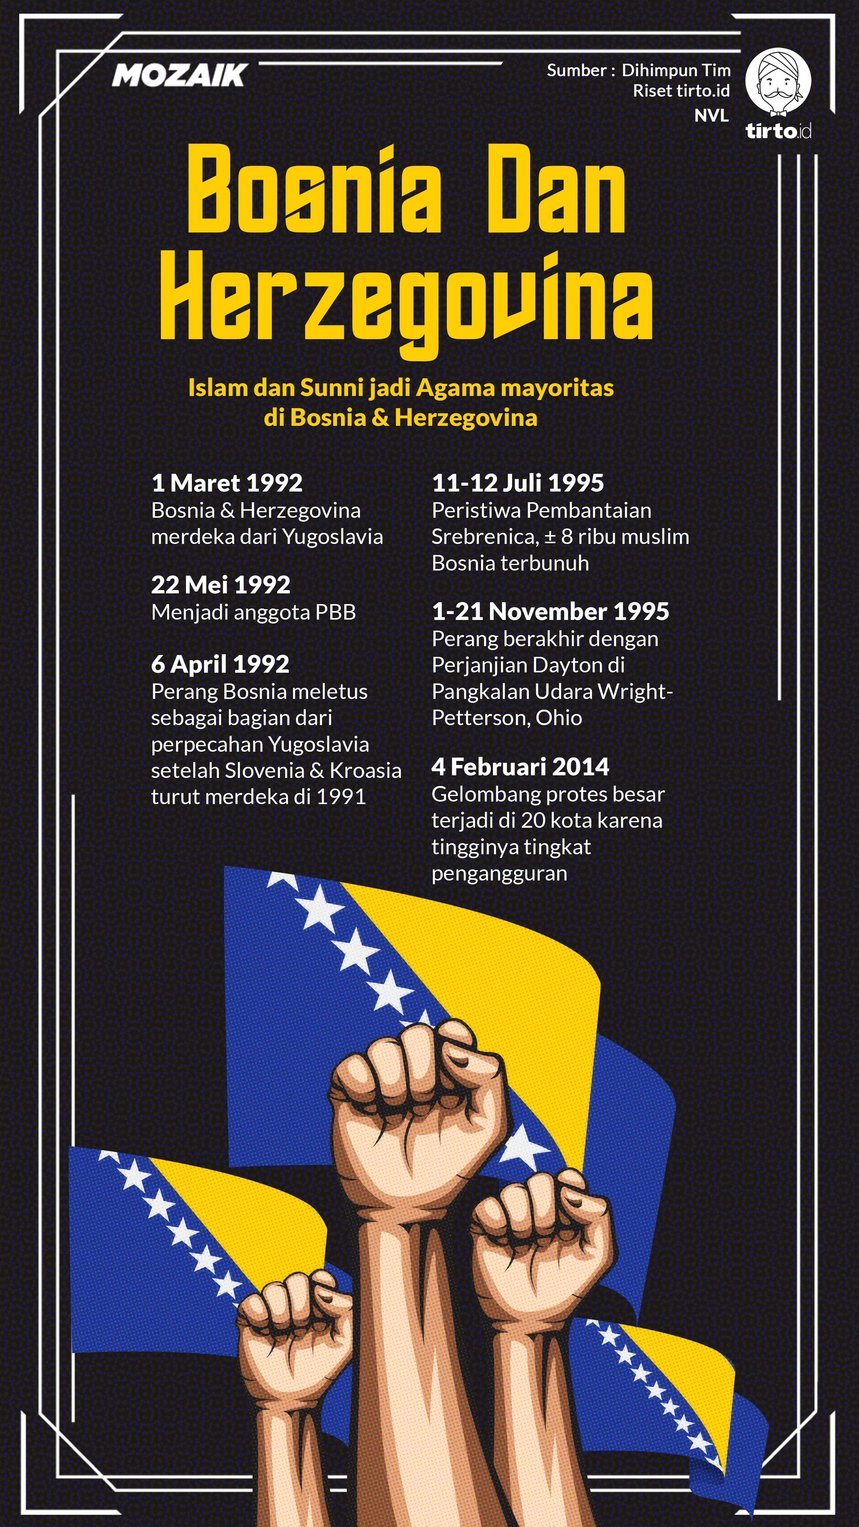 Infografik Mozaik Bosnia Dan Herzegovina